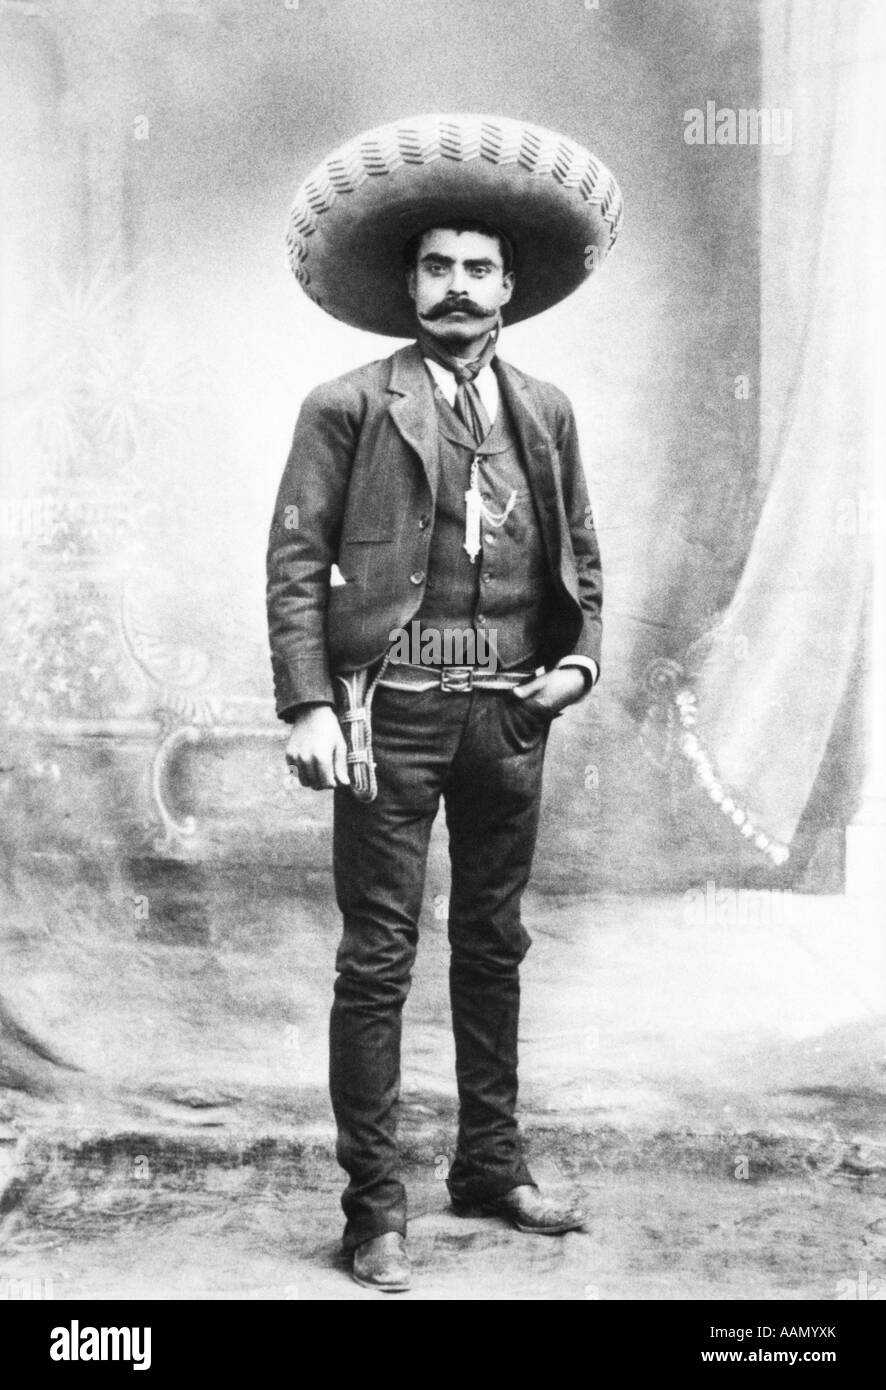 1900s 1911 EMILIANO ZAPATA MEXICAN REBEL REVOLUTIONARY AND HERO Stock Photo